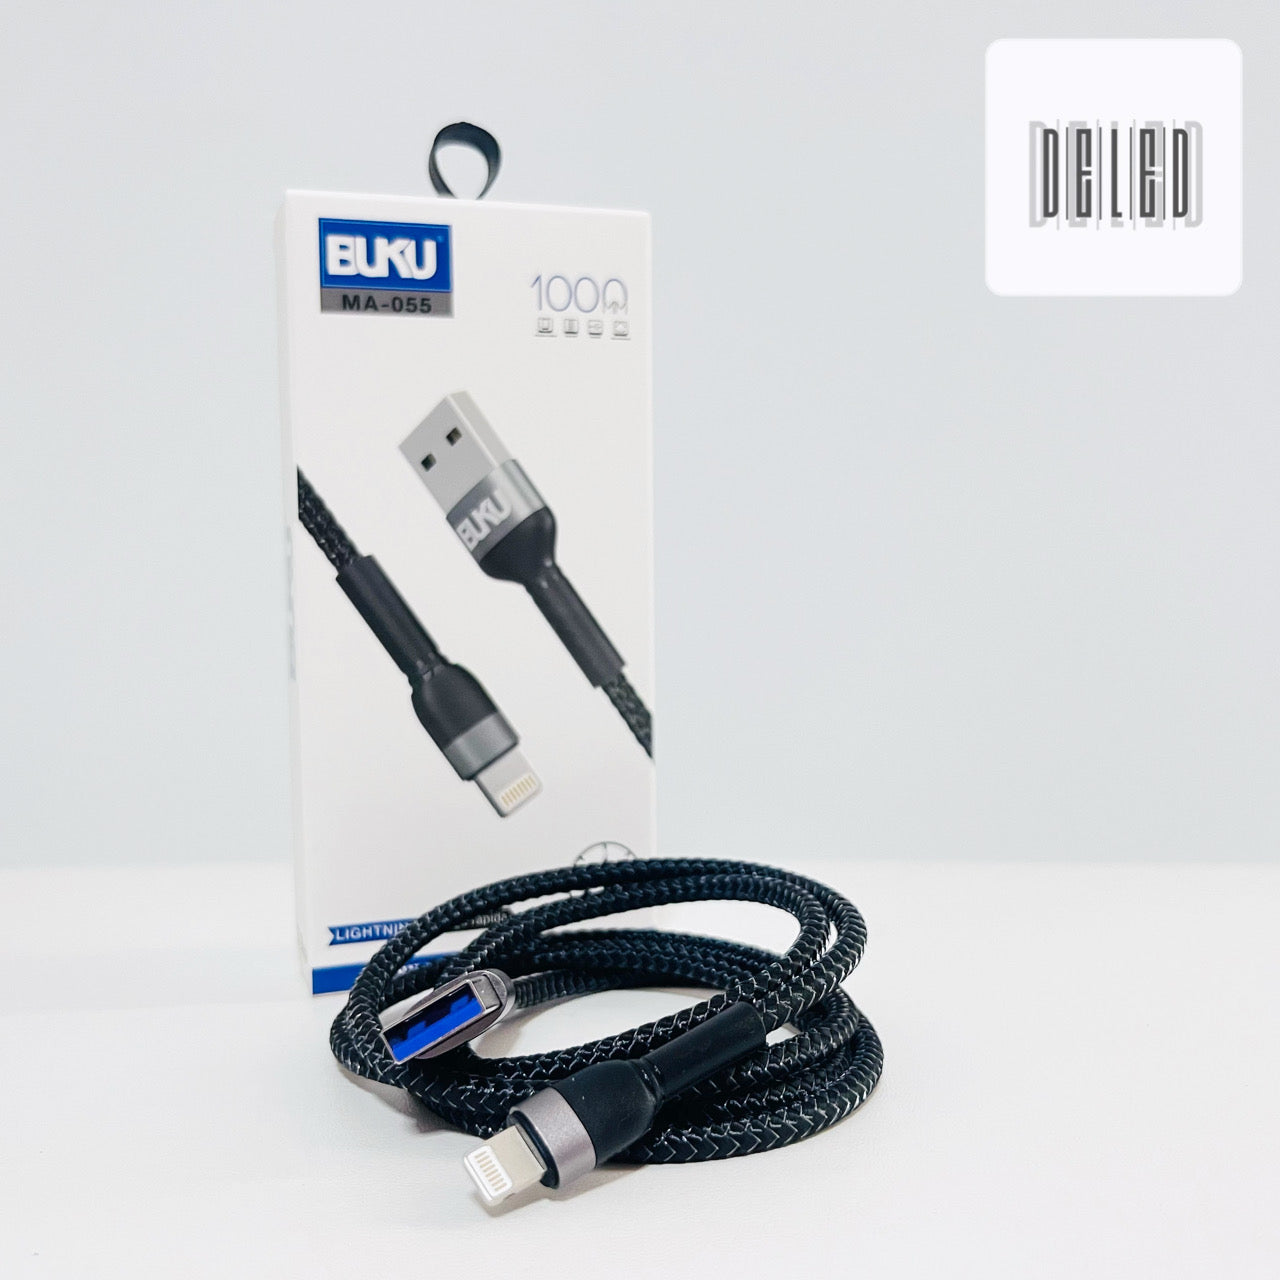 Cable Cargador USB Lightning para iPhone 1 Metro 2.4A BUKU MA-055